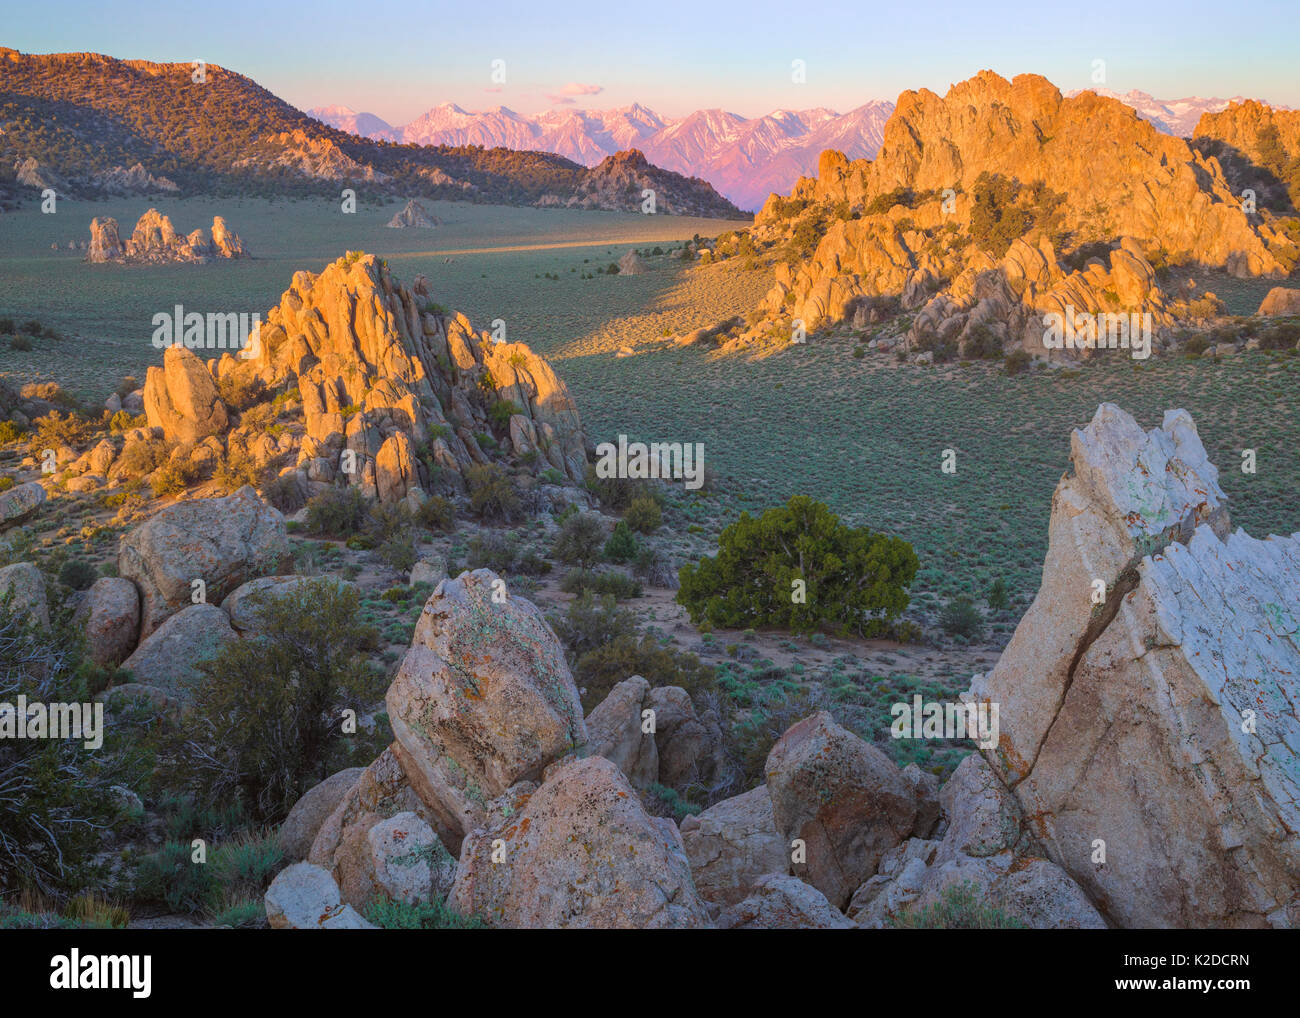 Las Montañas Inyo con artemisa valles, afloramientos rocosos, Pinyon pinos, sabinas y vistas de Sierra Nevada, California, EE.UU., Mayo. Foto de stock